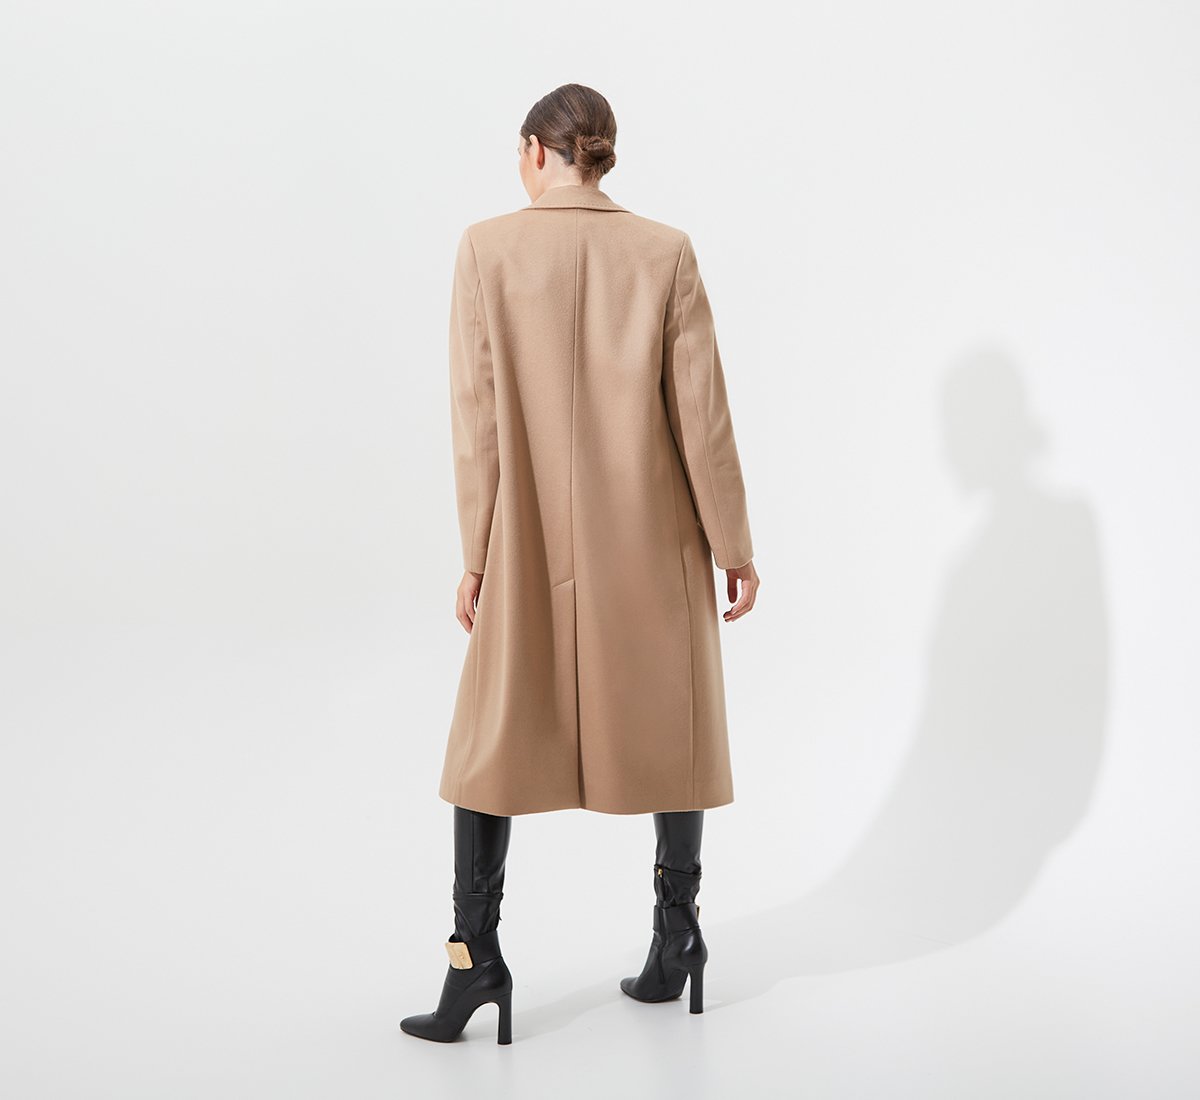 Fabi 100% cashmere coat